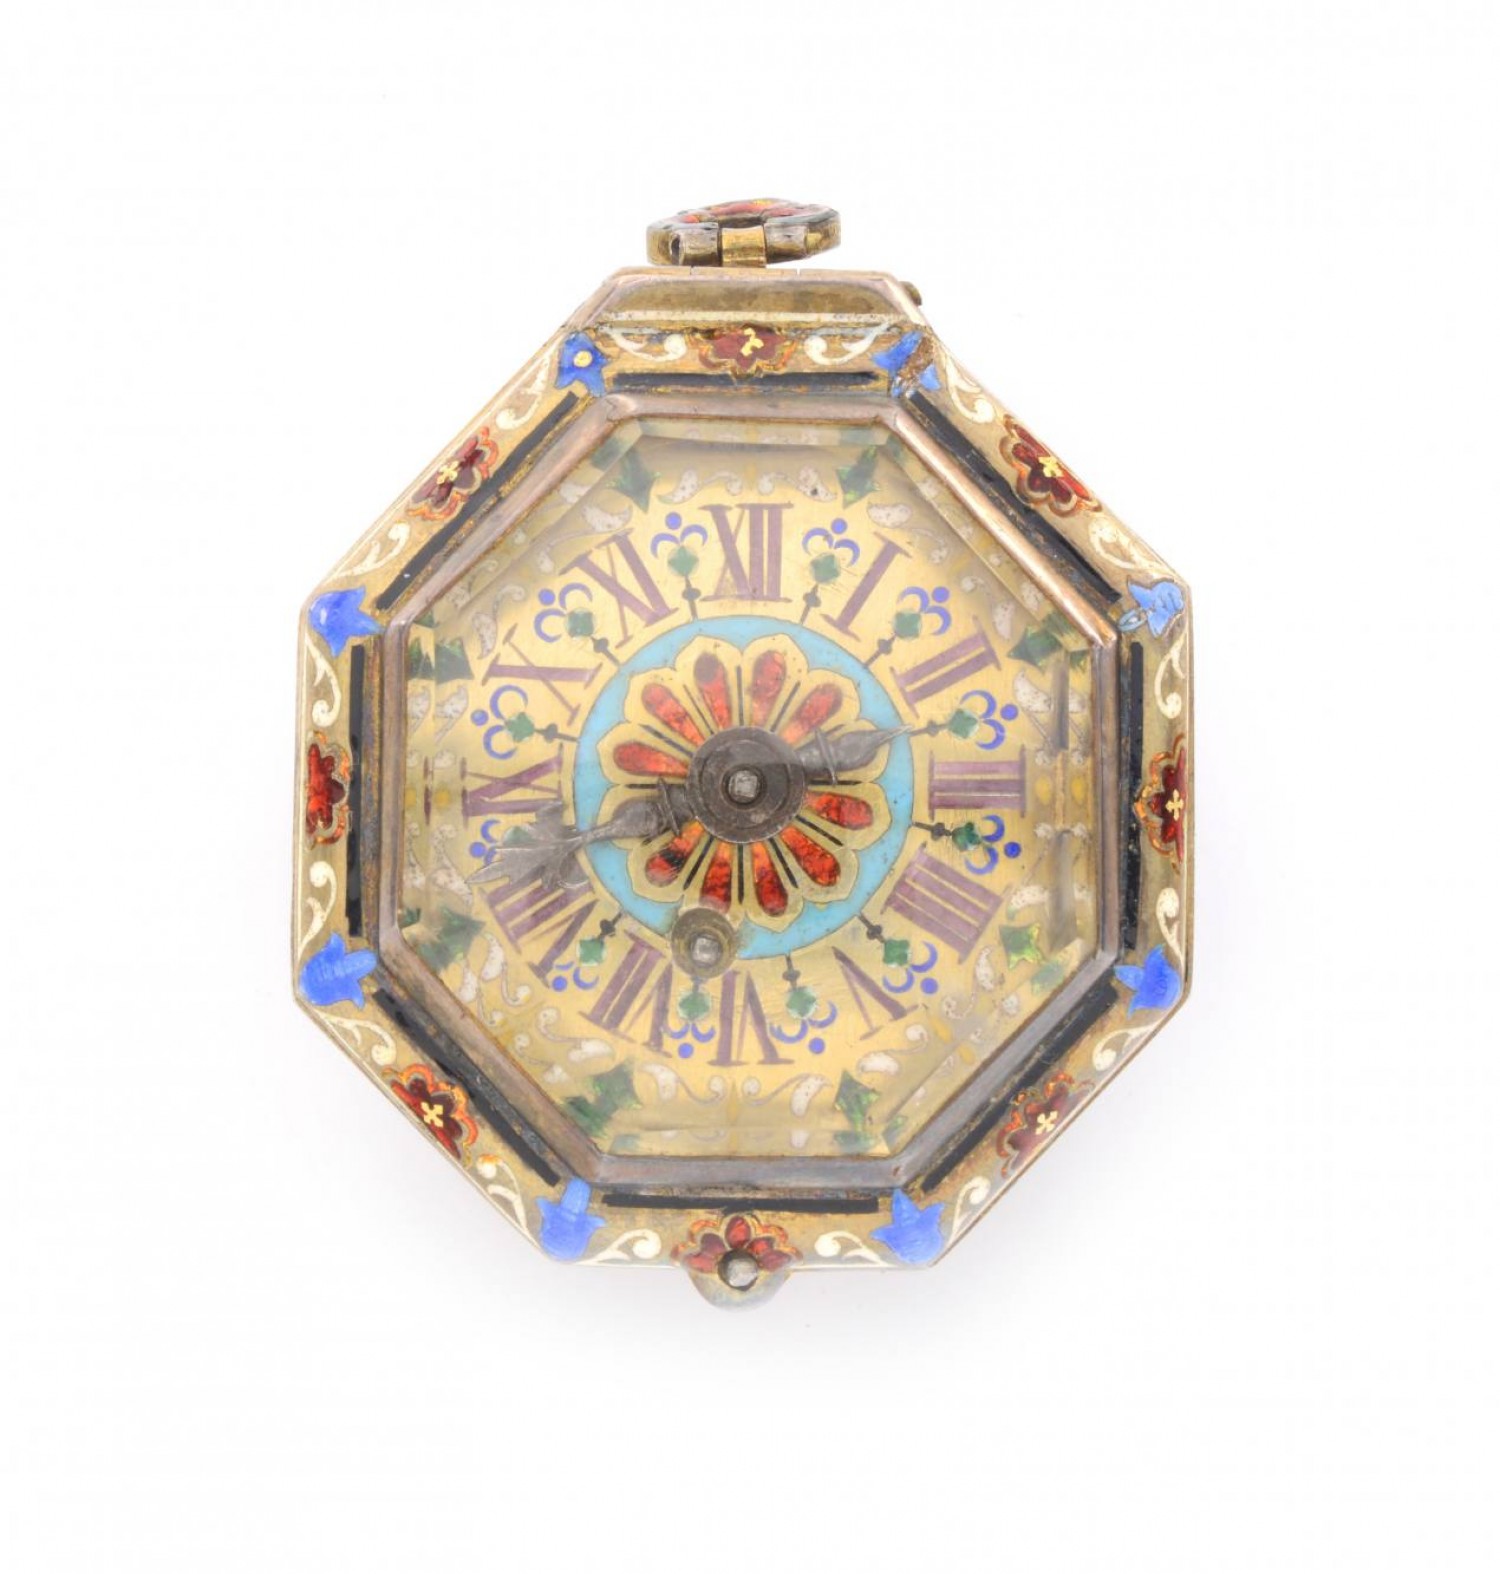 Gray Benjamin: osmihranné závěsné hodinky, 1. polovina 18. století zlacené stříbro, email, horský křišťál, 4 x 4,5 cm Zezula 5. 10. 2019 vyvolávací cena: 250 000 Kč (+ 20% provize)